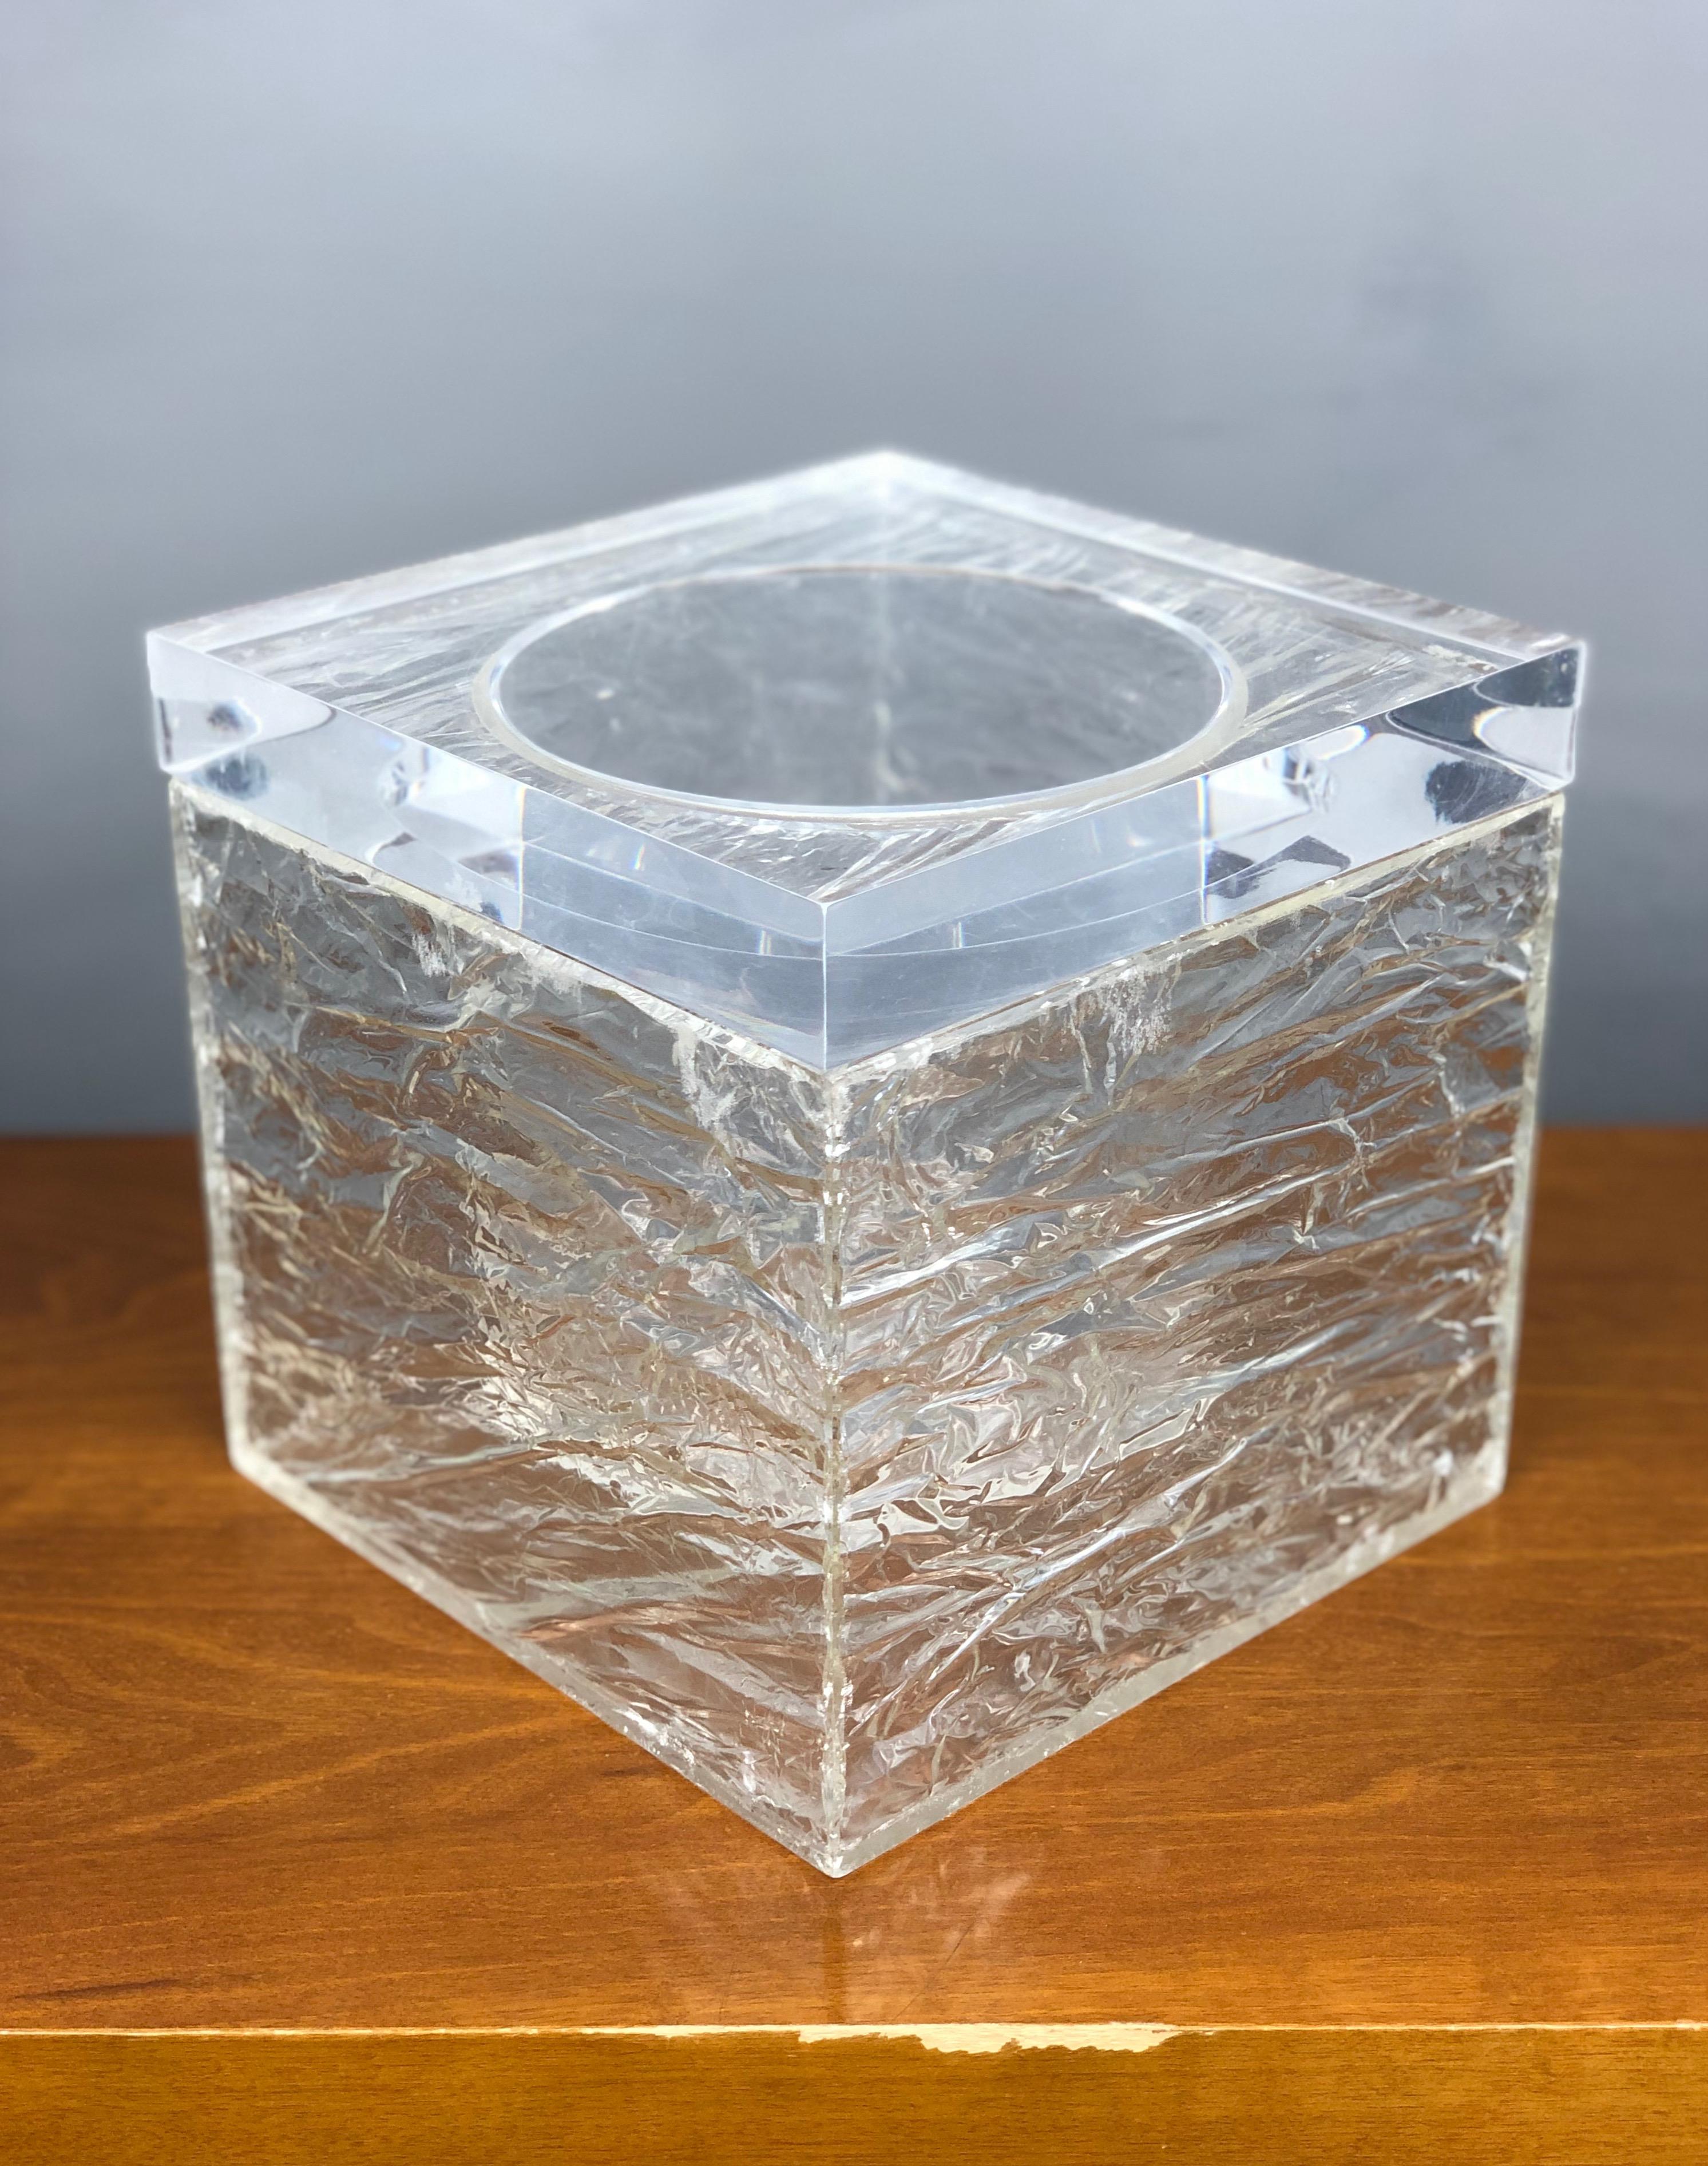 Étonnant seau à glace carré en plexiglas, effet gelé, fabriqué en Italie dans les années 1970.